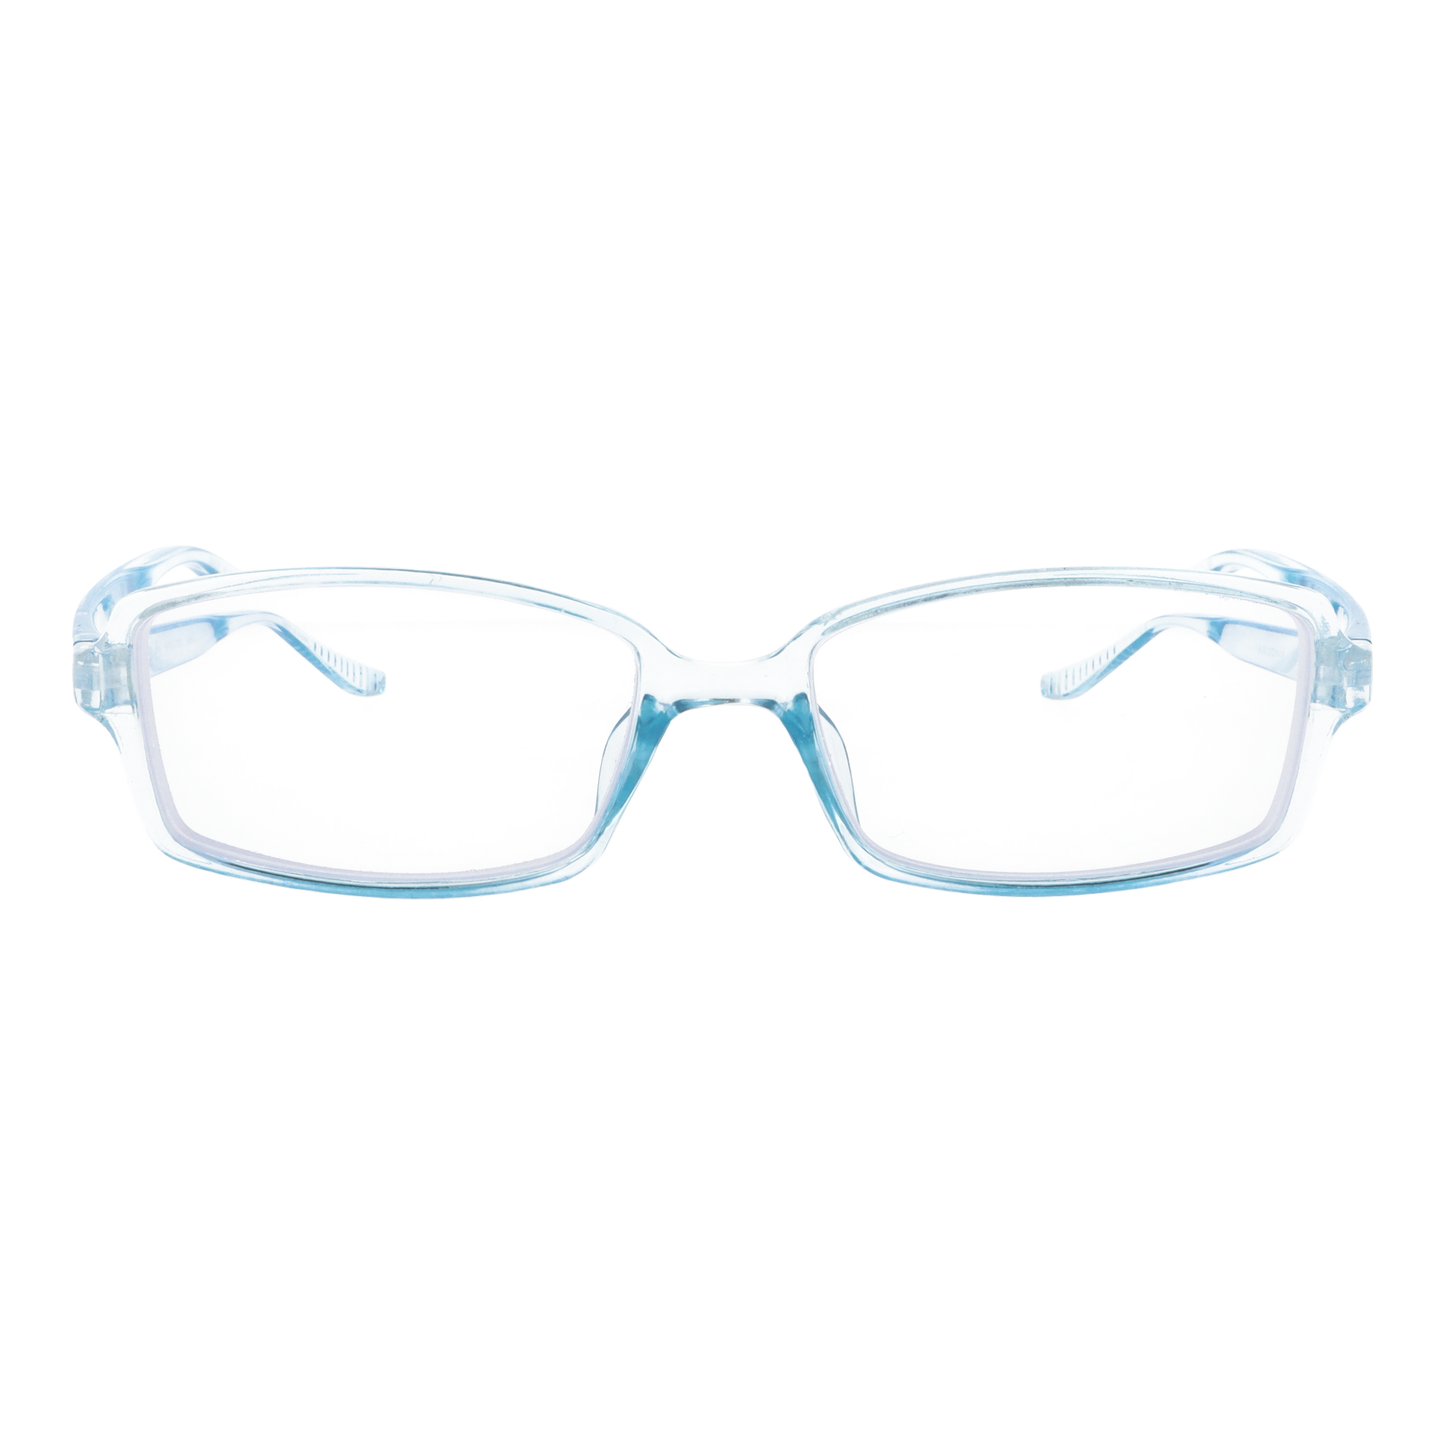 正面から見たアイウェア【お風呂メガネ】近視用のカラーアクアブルー